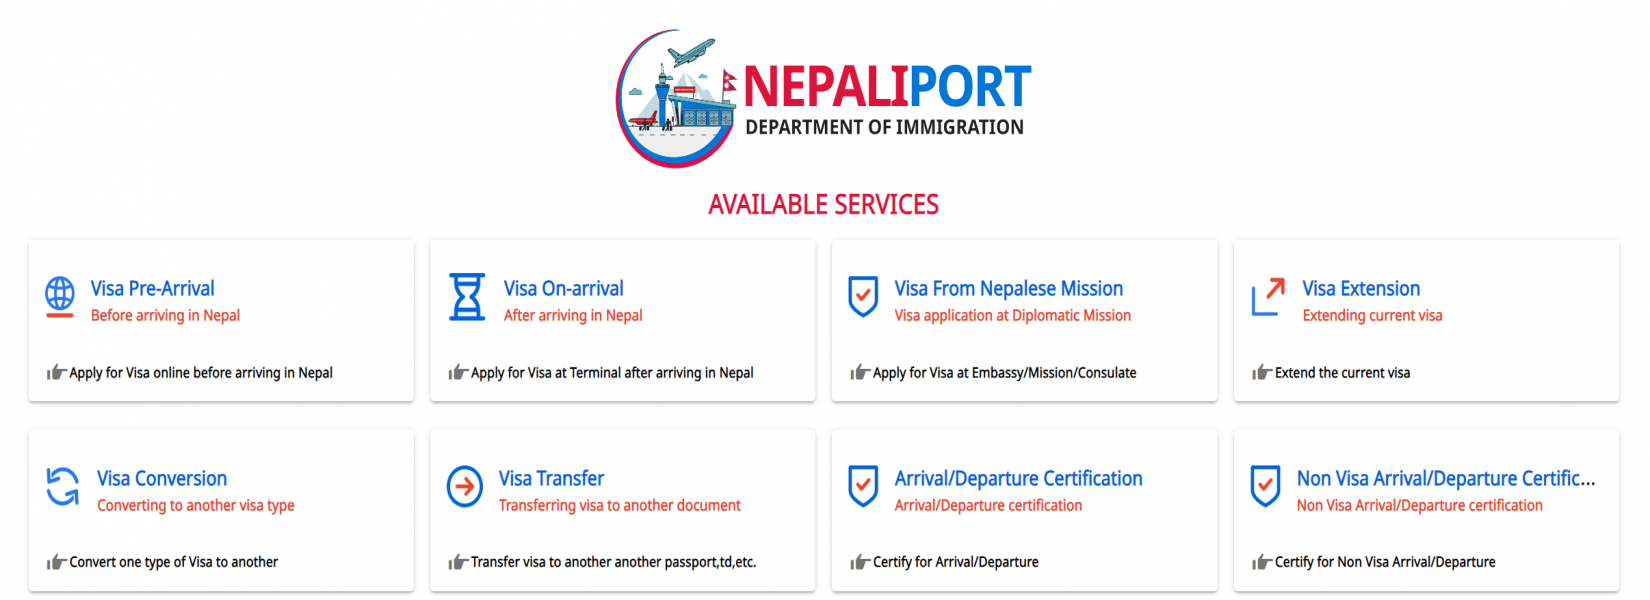 ビザのオンライン申請に関する重要なお知らせ / Notice Regarding Online Visa Application